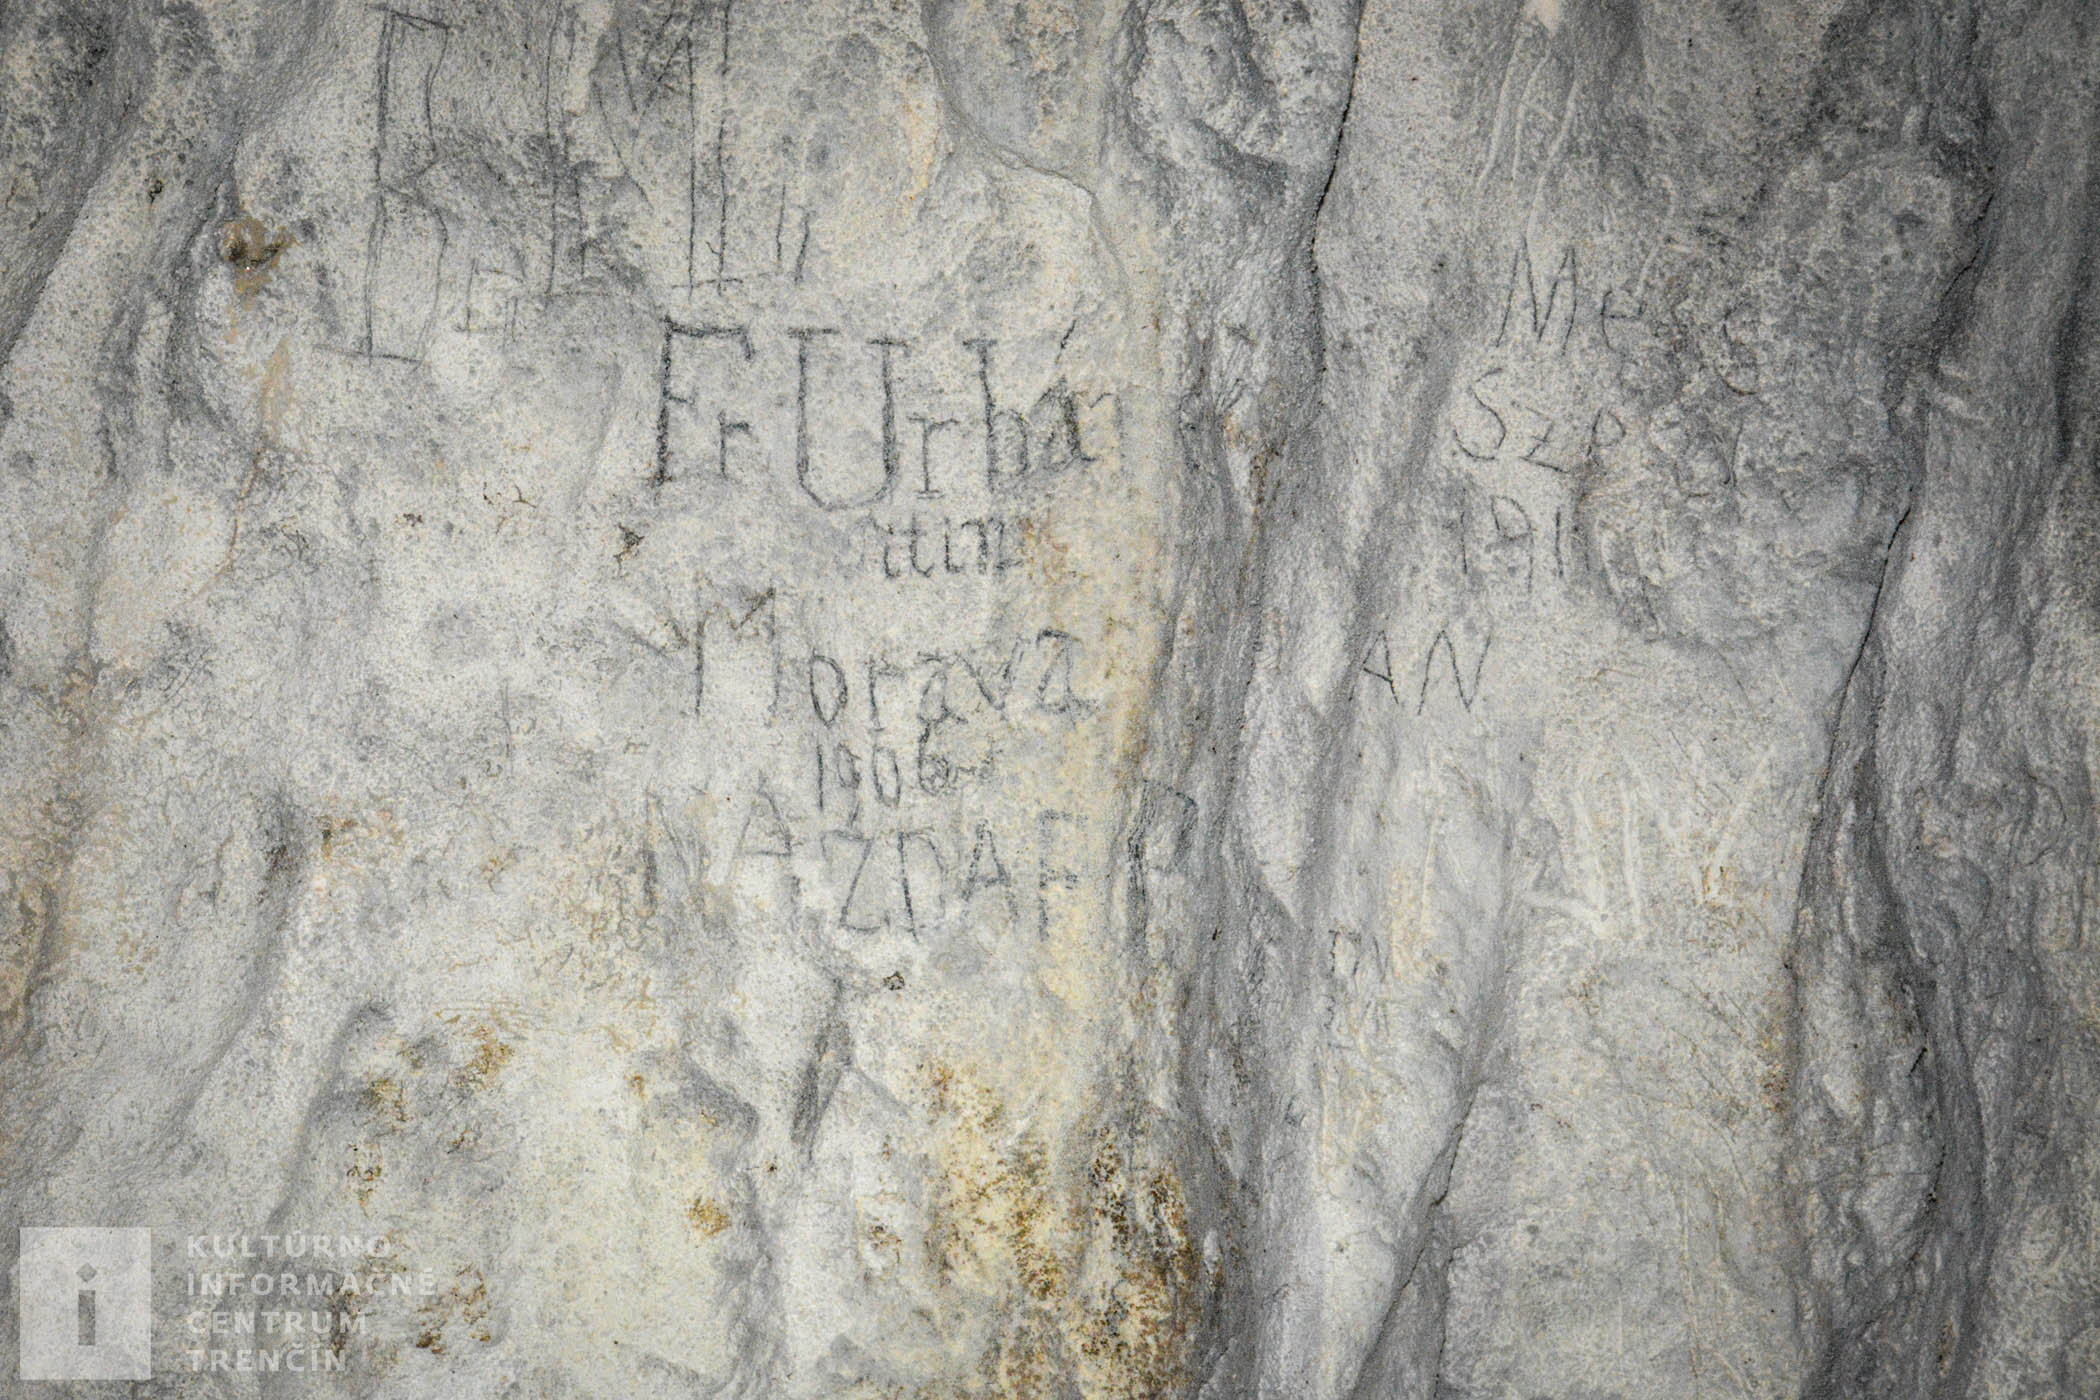 Zrejme najstarší, dnes už nečitateľný nápis, je nad vchodom do jaskyne z vonkajšej strany.